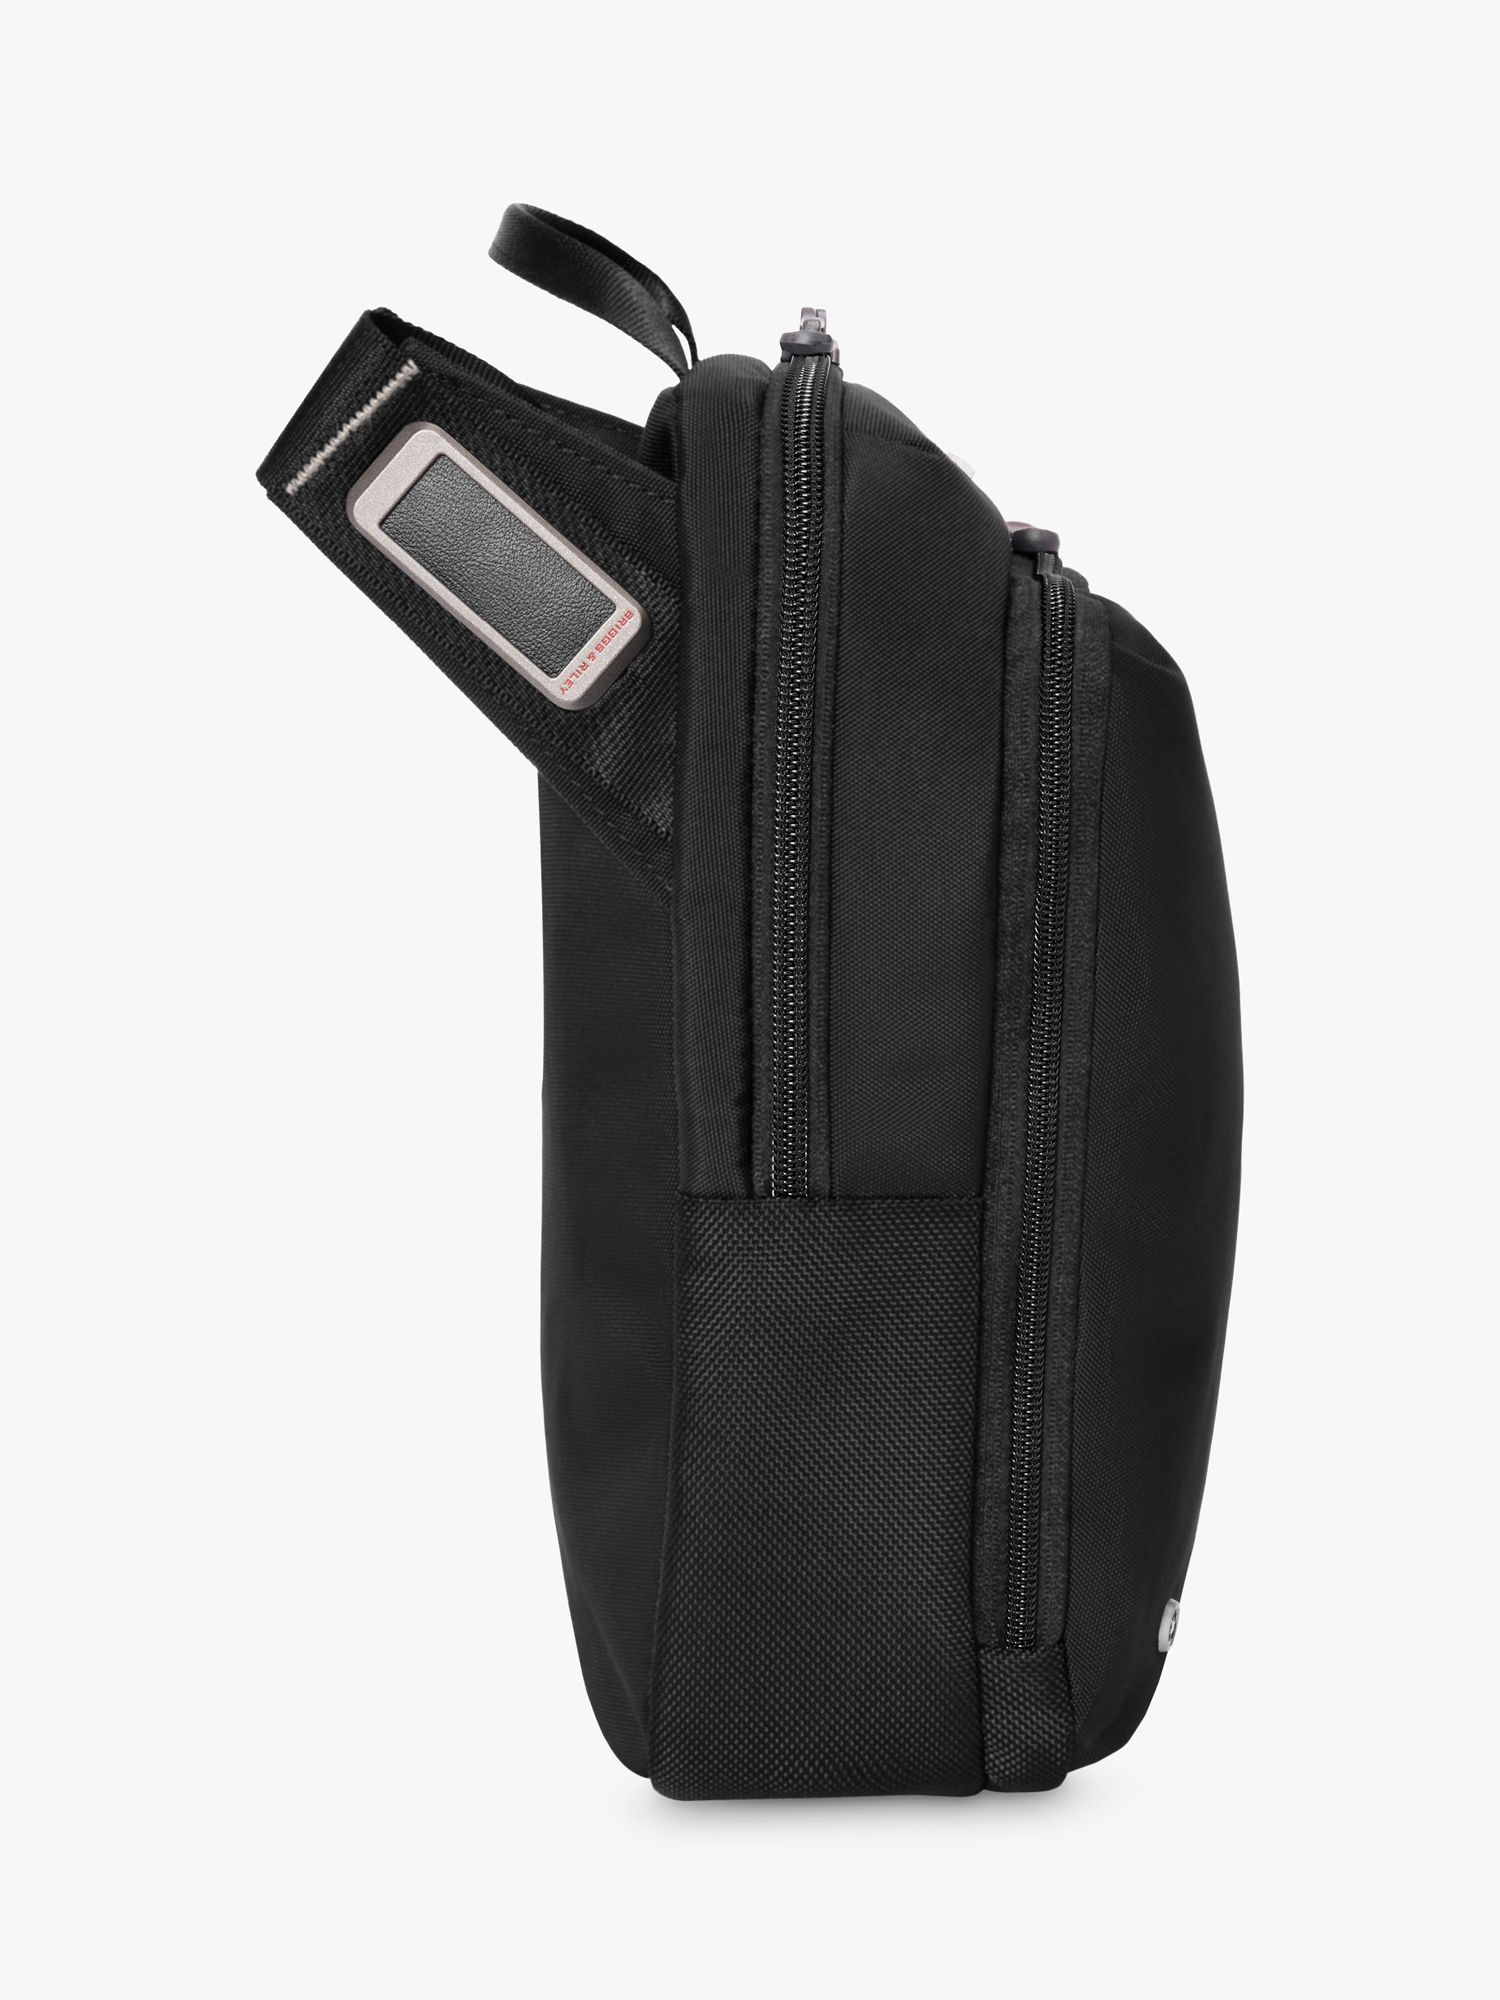 Briggs & Riley HTA Cross Body Bag, Black at John Lewis & Partners